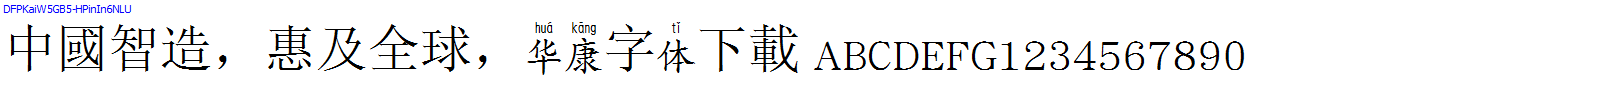 華康字體DFPKaiW5GB5-HPinIn6NLU.TTF